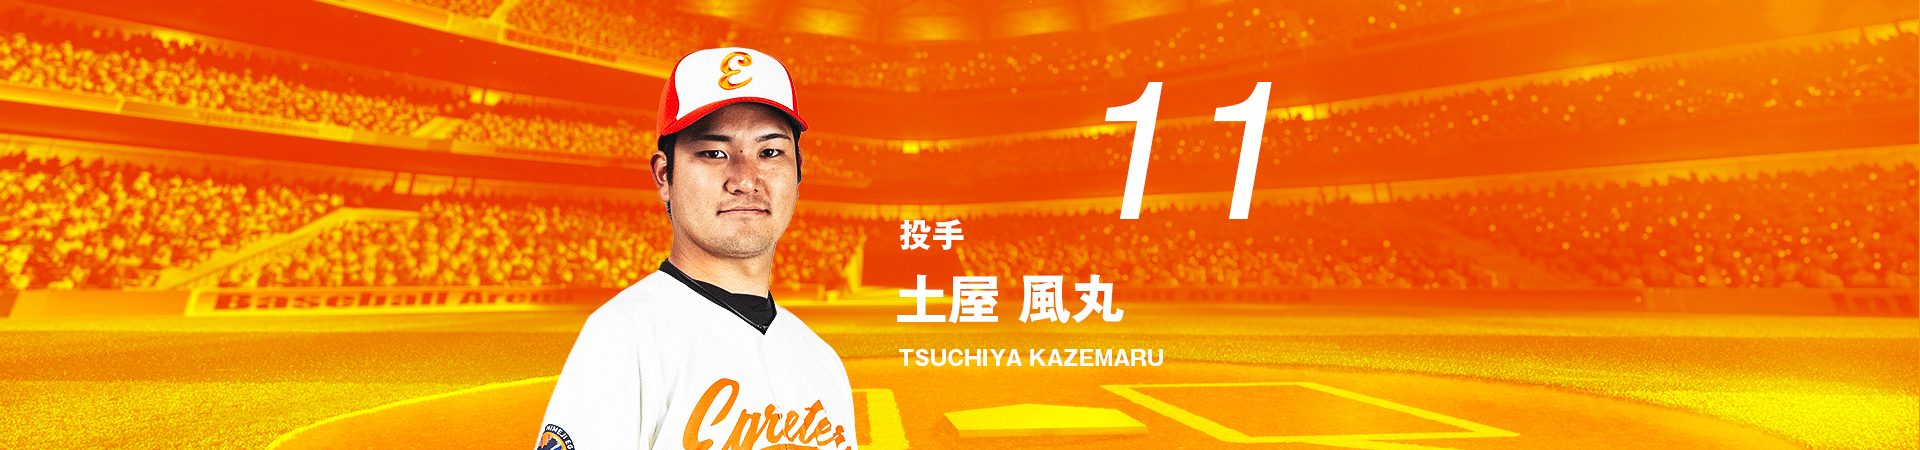 11【投手】土屋 風丸-TSUCHIYA KAZEMARU